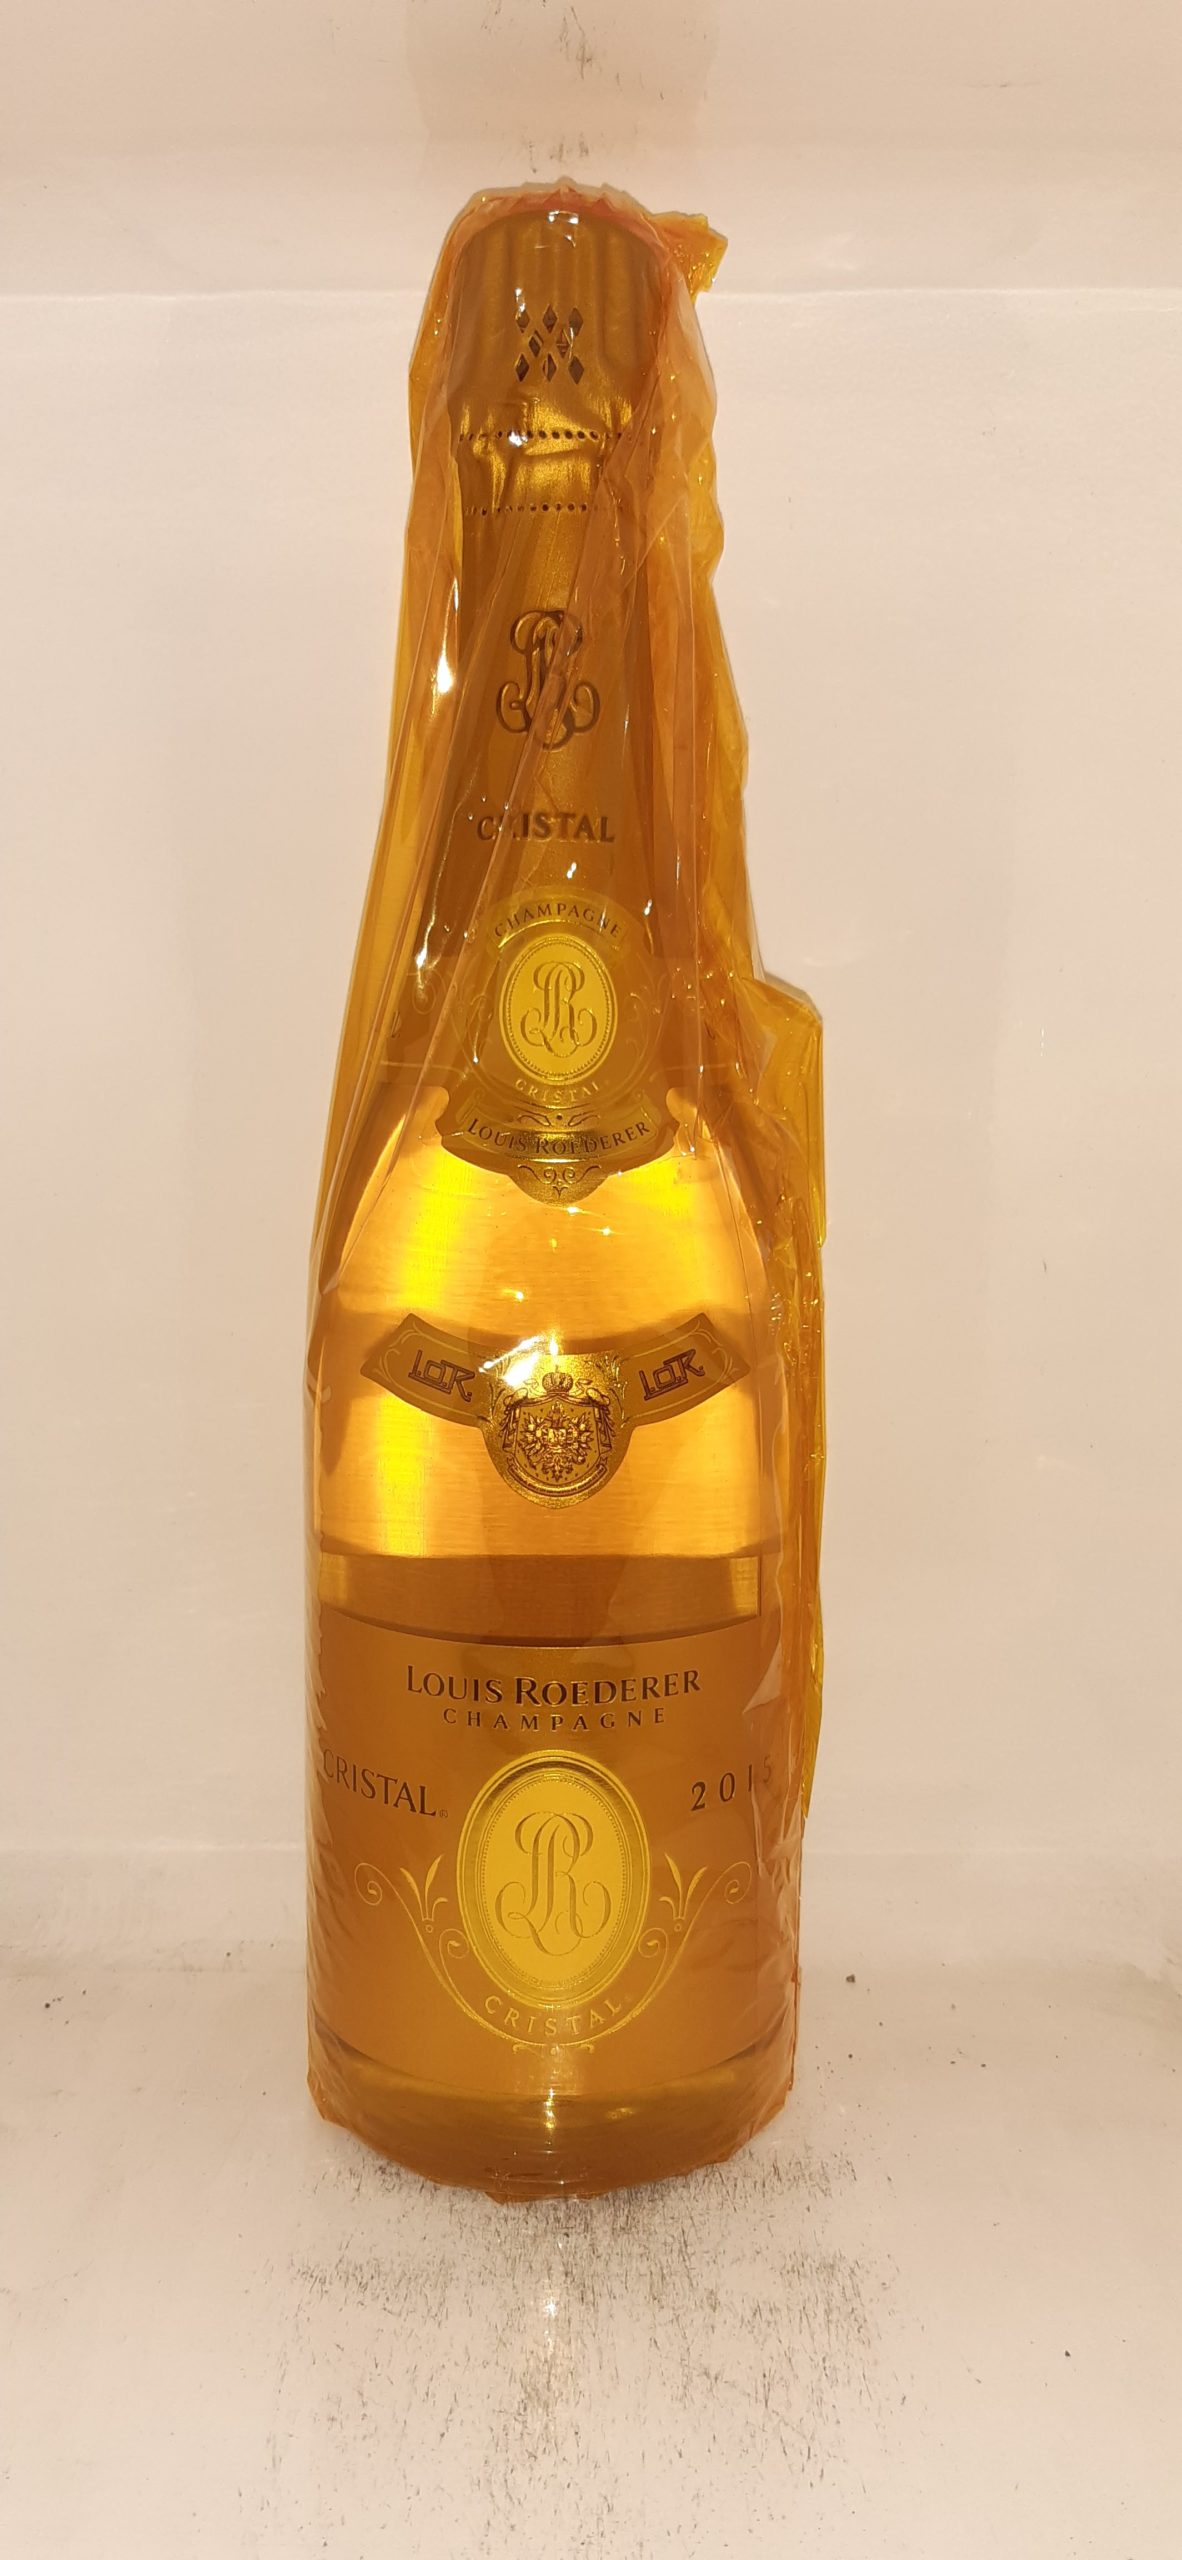 Champagne Louis ROEDERER Cristal 2015 Brut – Cave des Sacres